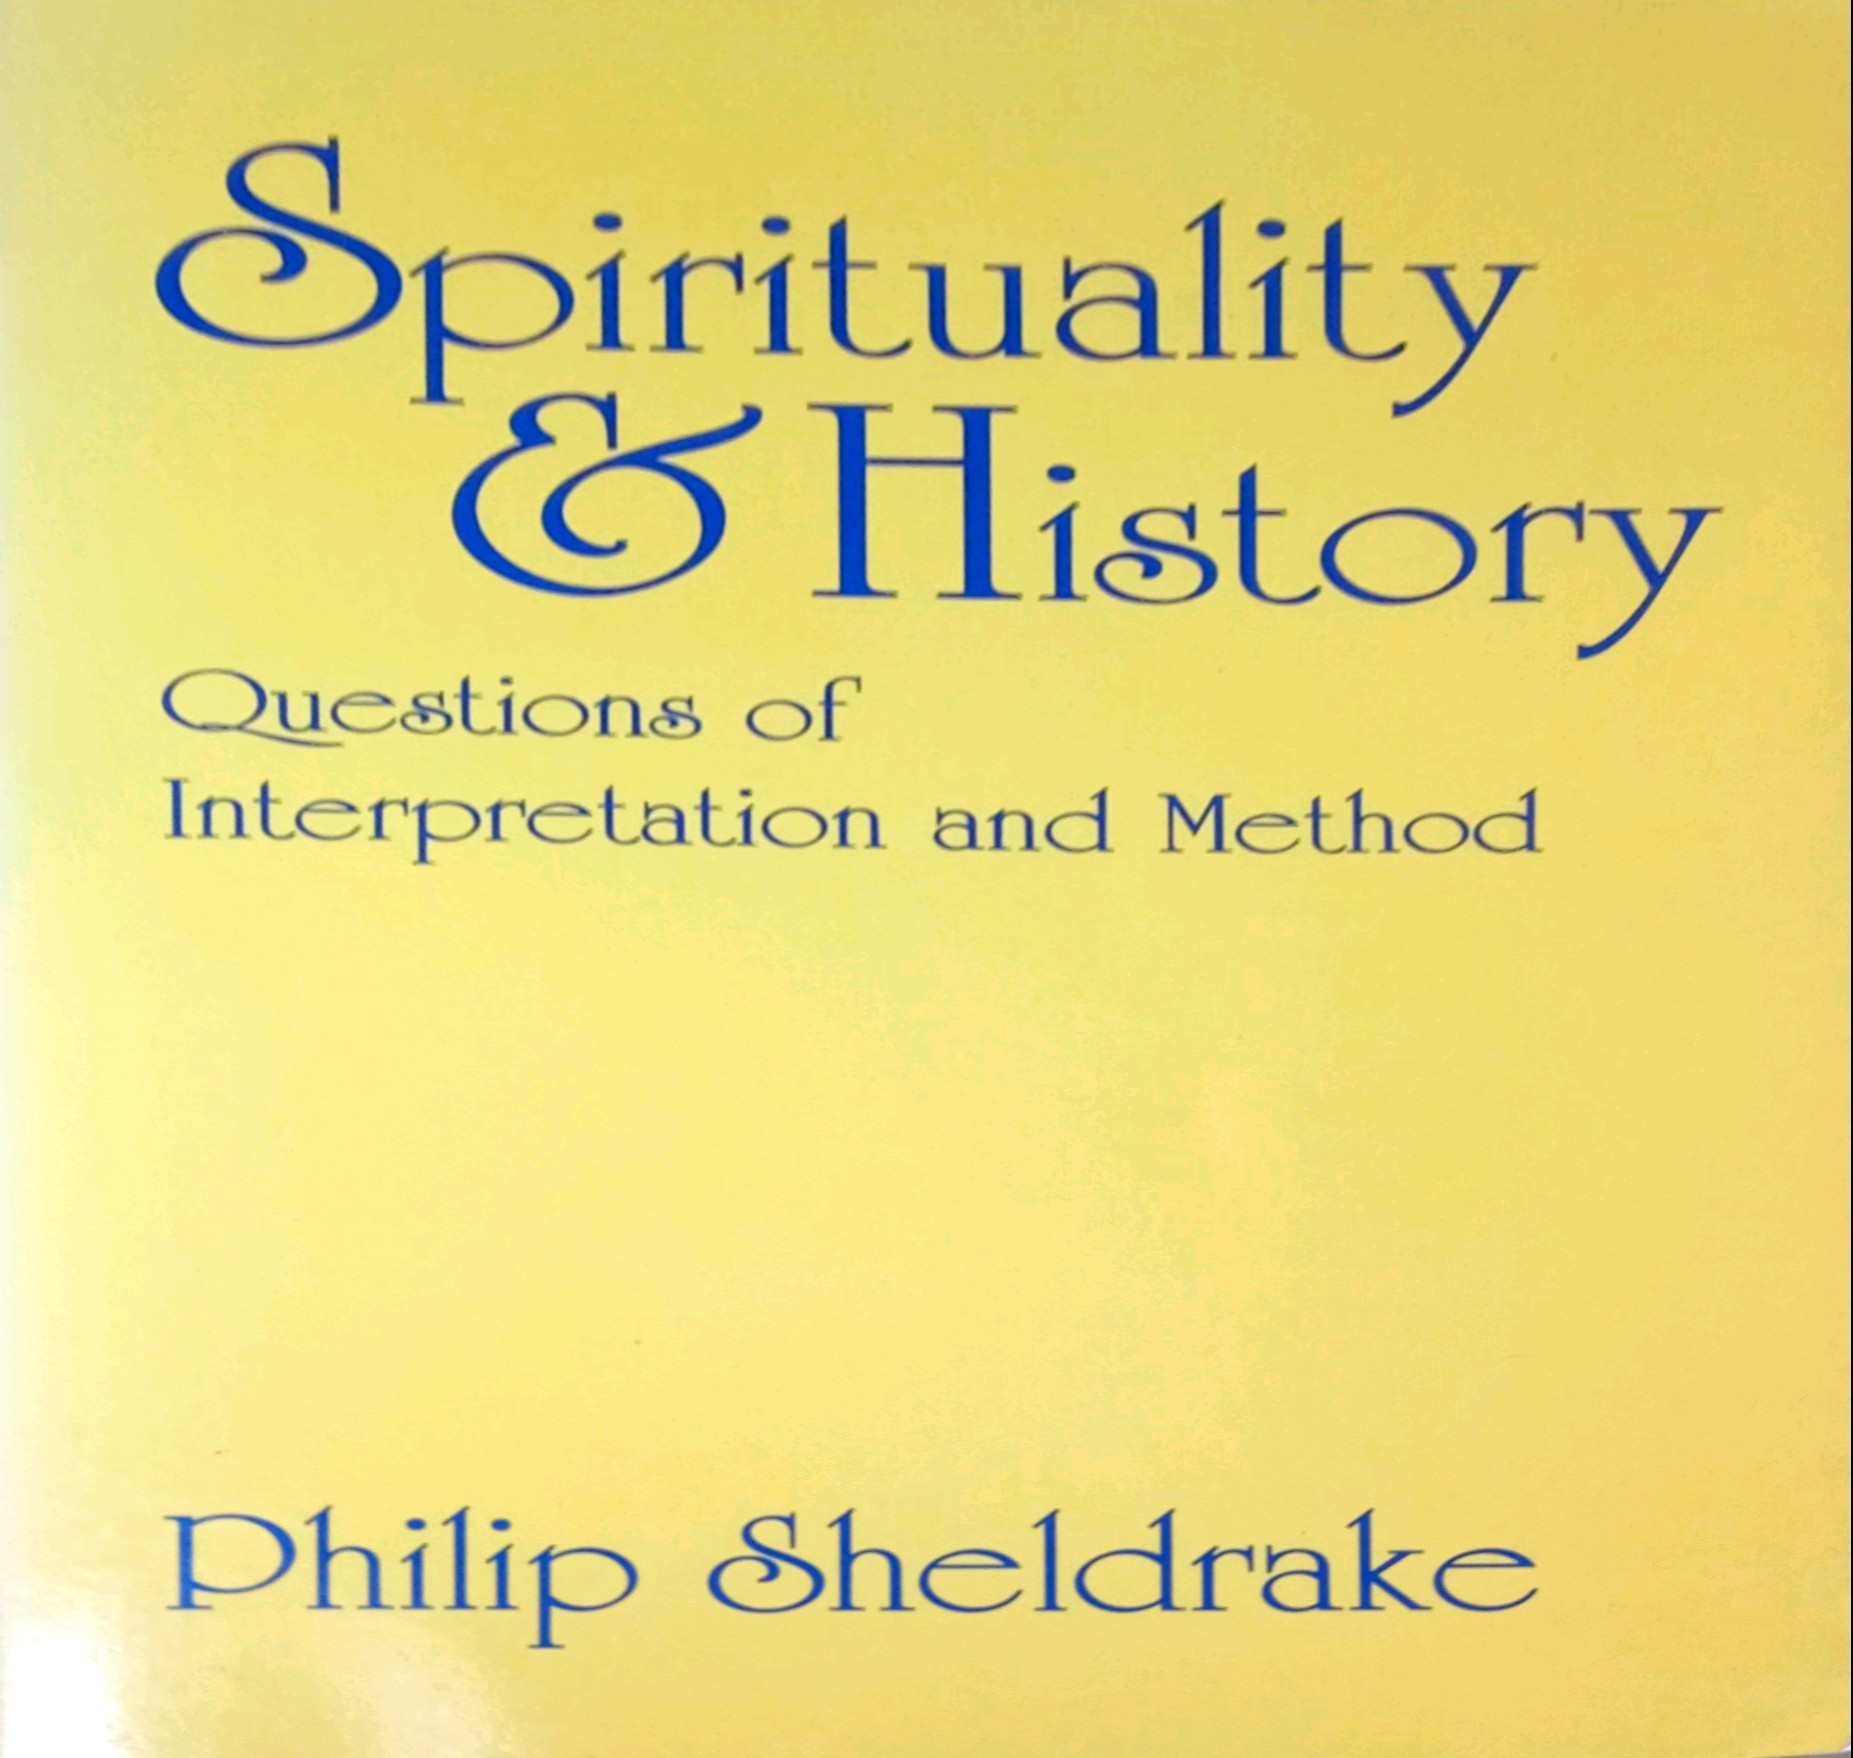 SPIRITUALITY AND HISTORY